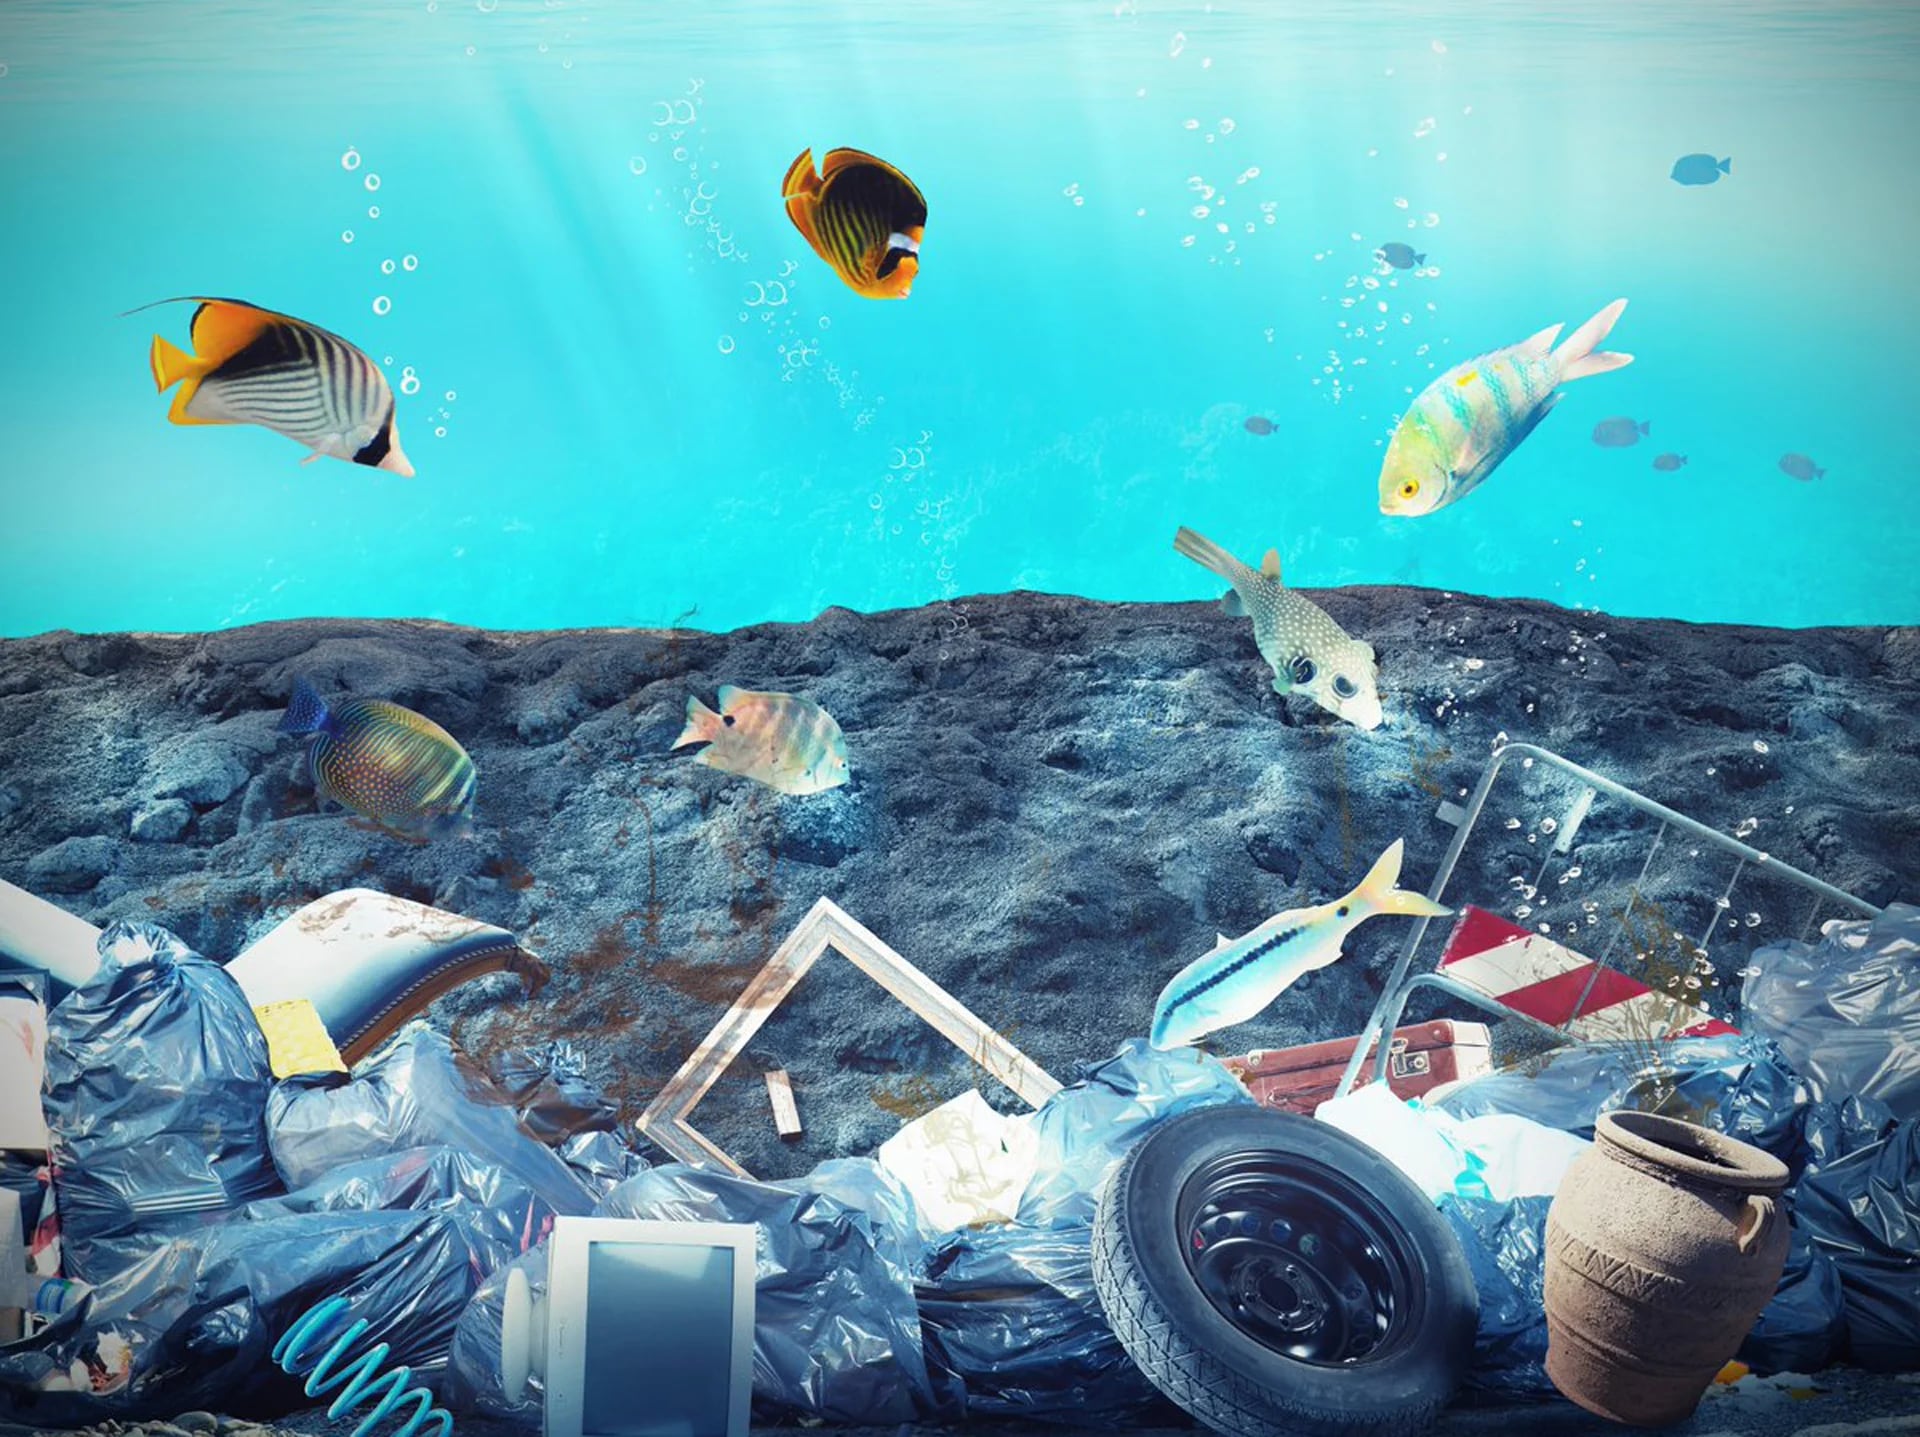 La contaminación plástica pone en peligro a 267 especies marinas